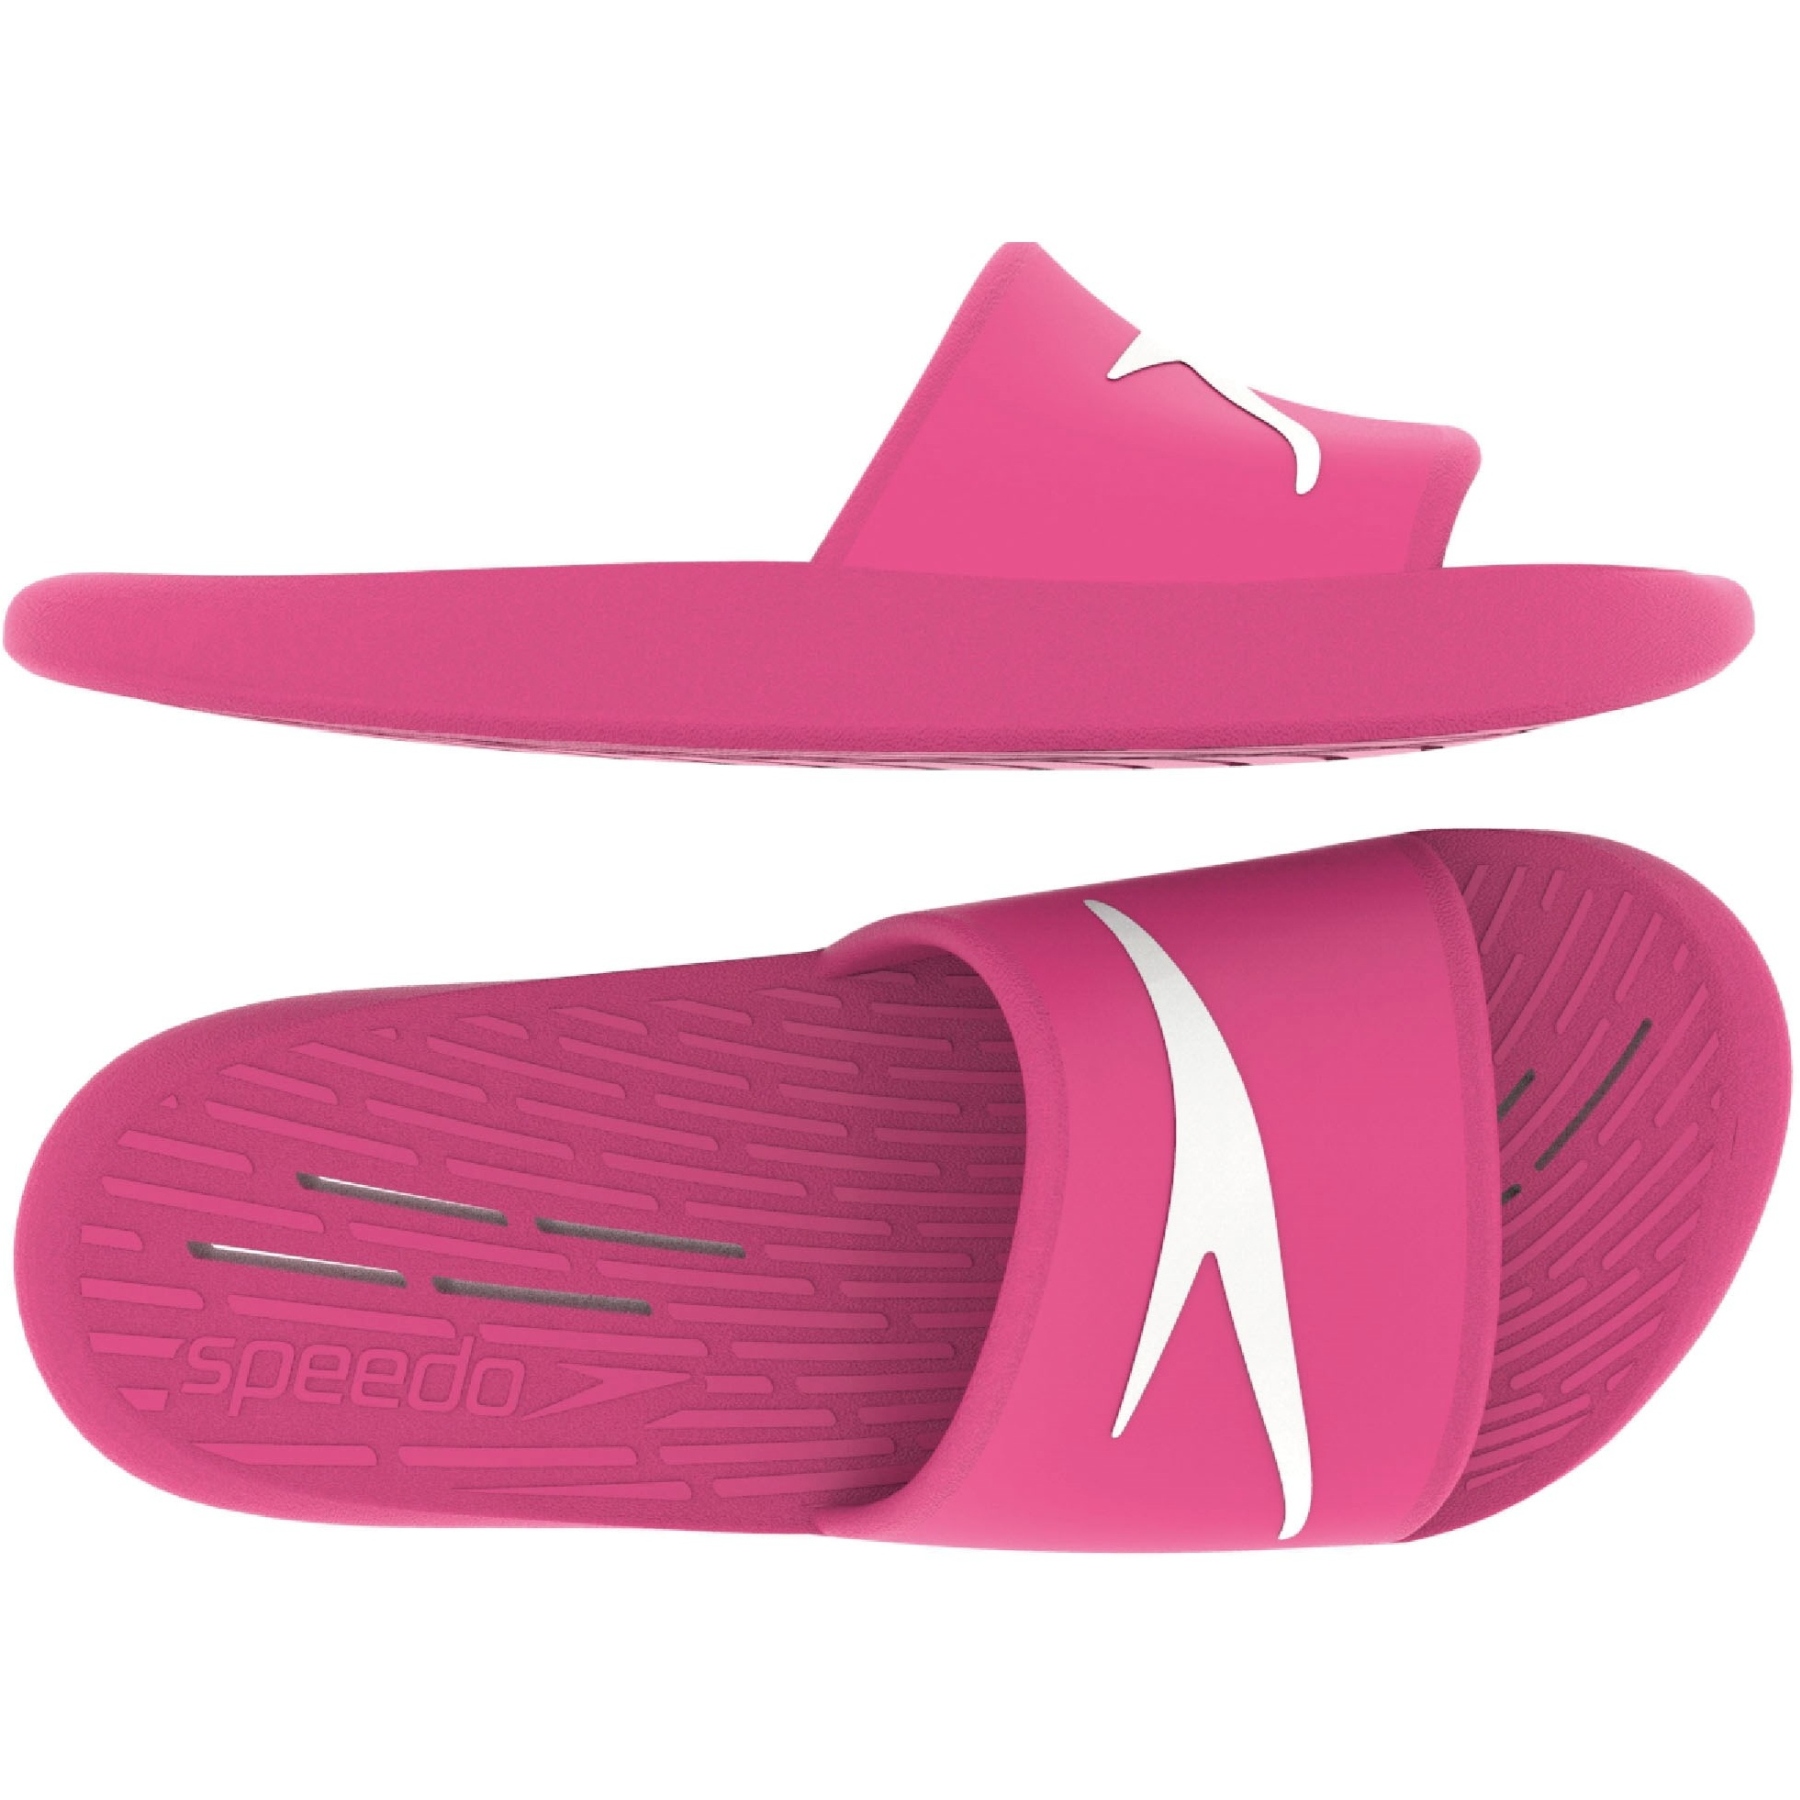 Produktbild von Speedo Slide Damen Badeschuhe - vegas pink